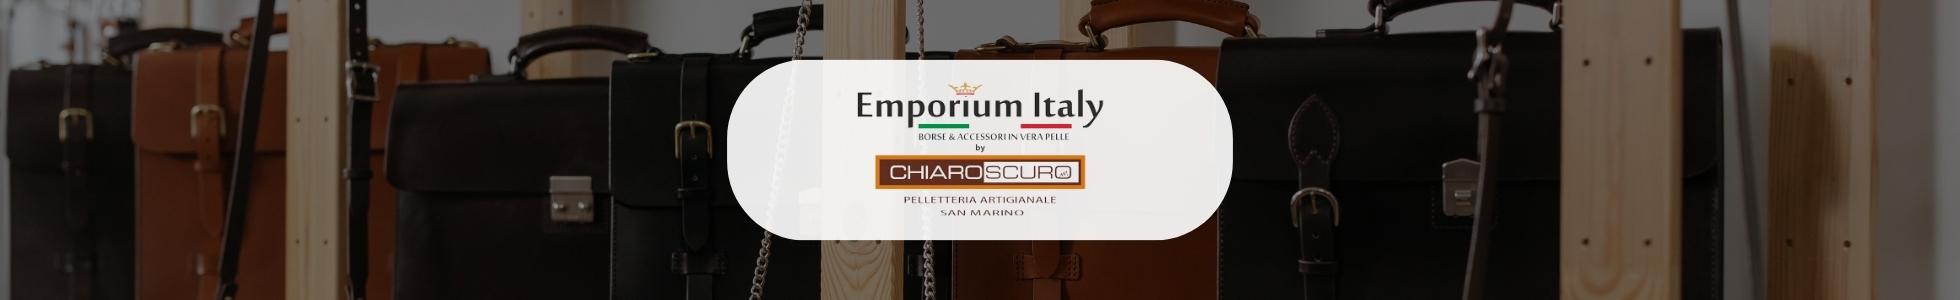 Emporium Italy - shop online borse ufficio in pelle